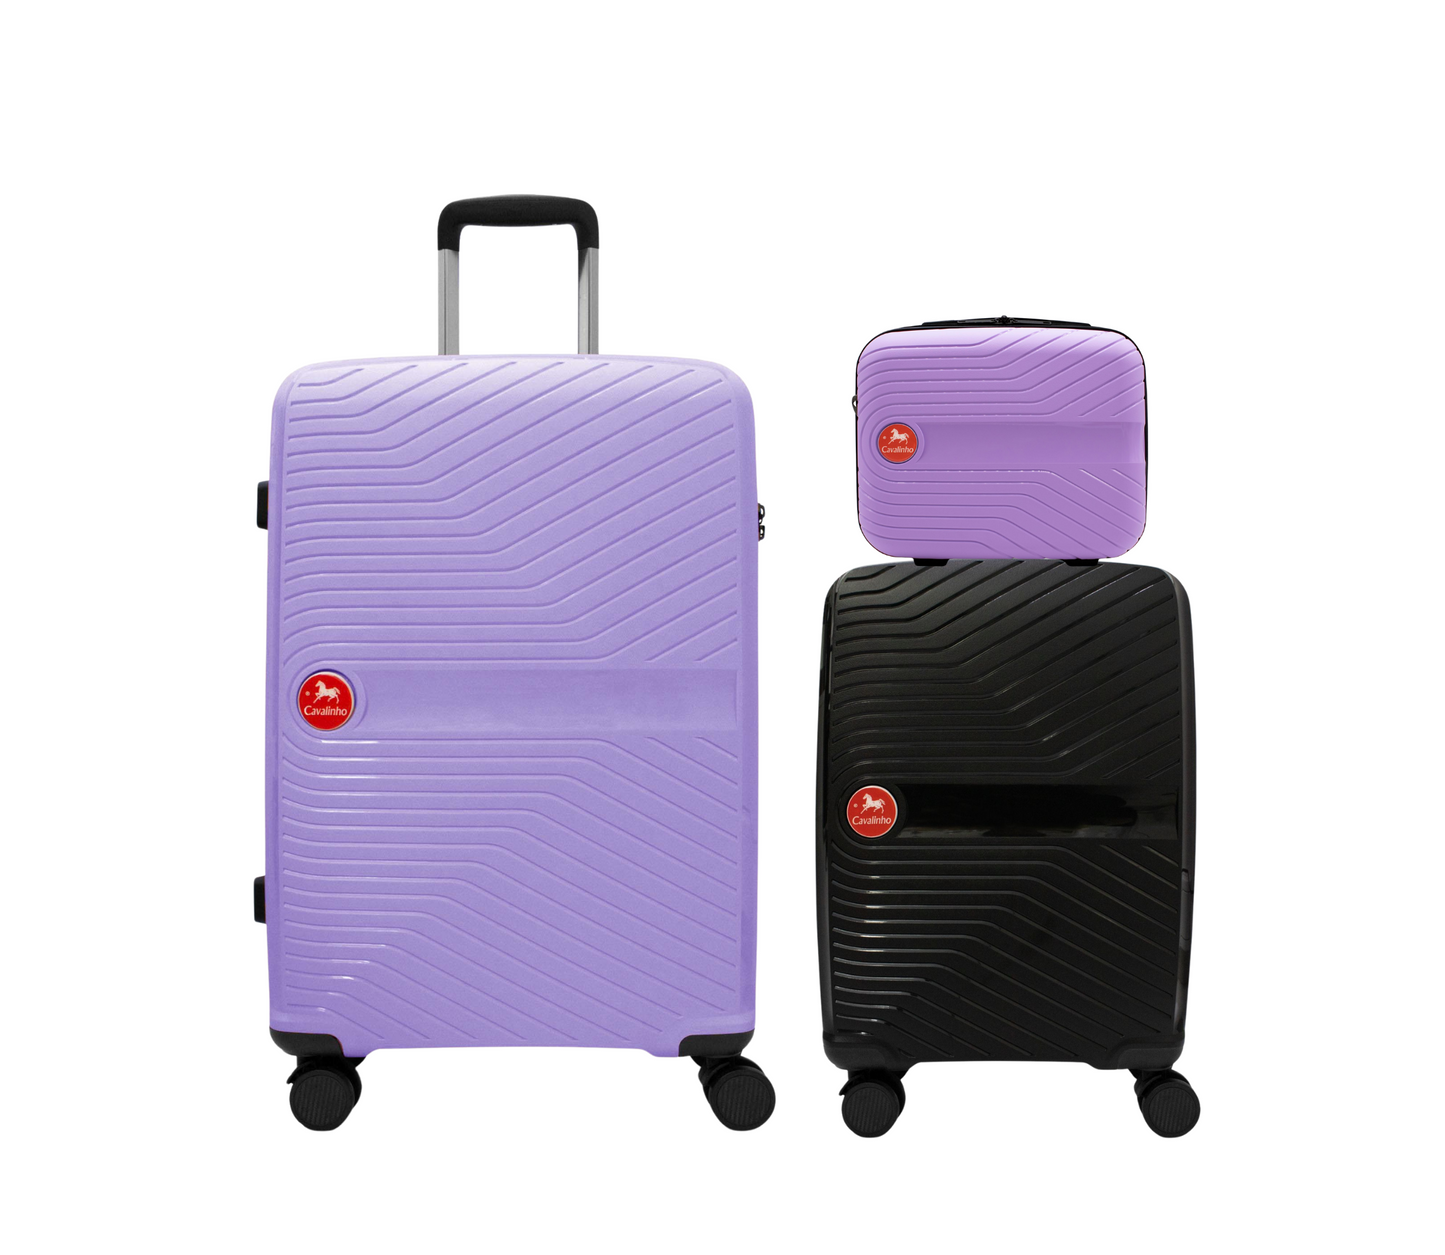 #color_ Lilac Black Lilac | Cavalinho Canada & USA Colorful 3 Piece Luggage Set (15", 19" & 28") - Lilac Black Lilac - 68020004.390139.S151928._1